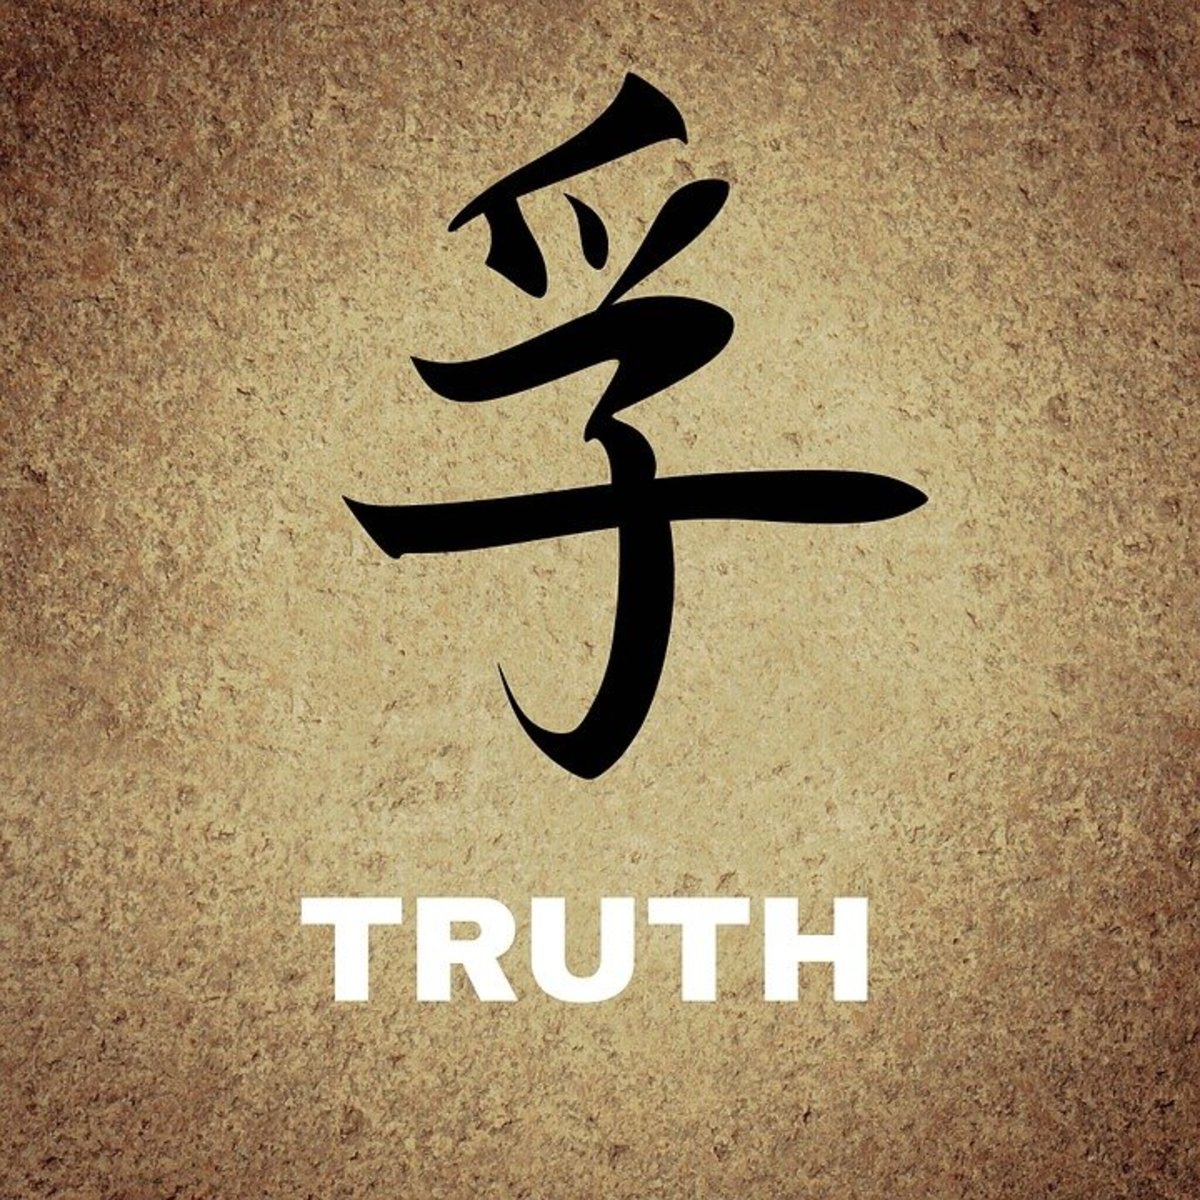 truth-a-double-edged-sword